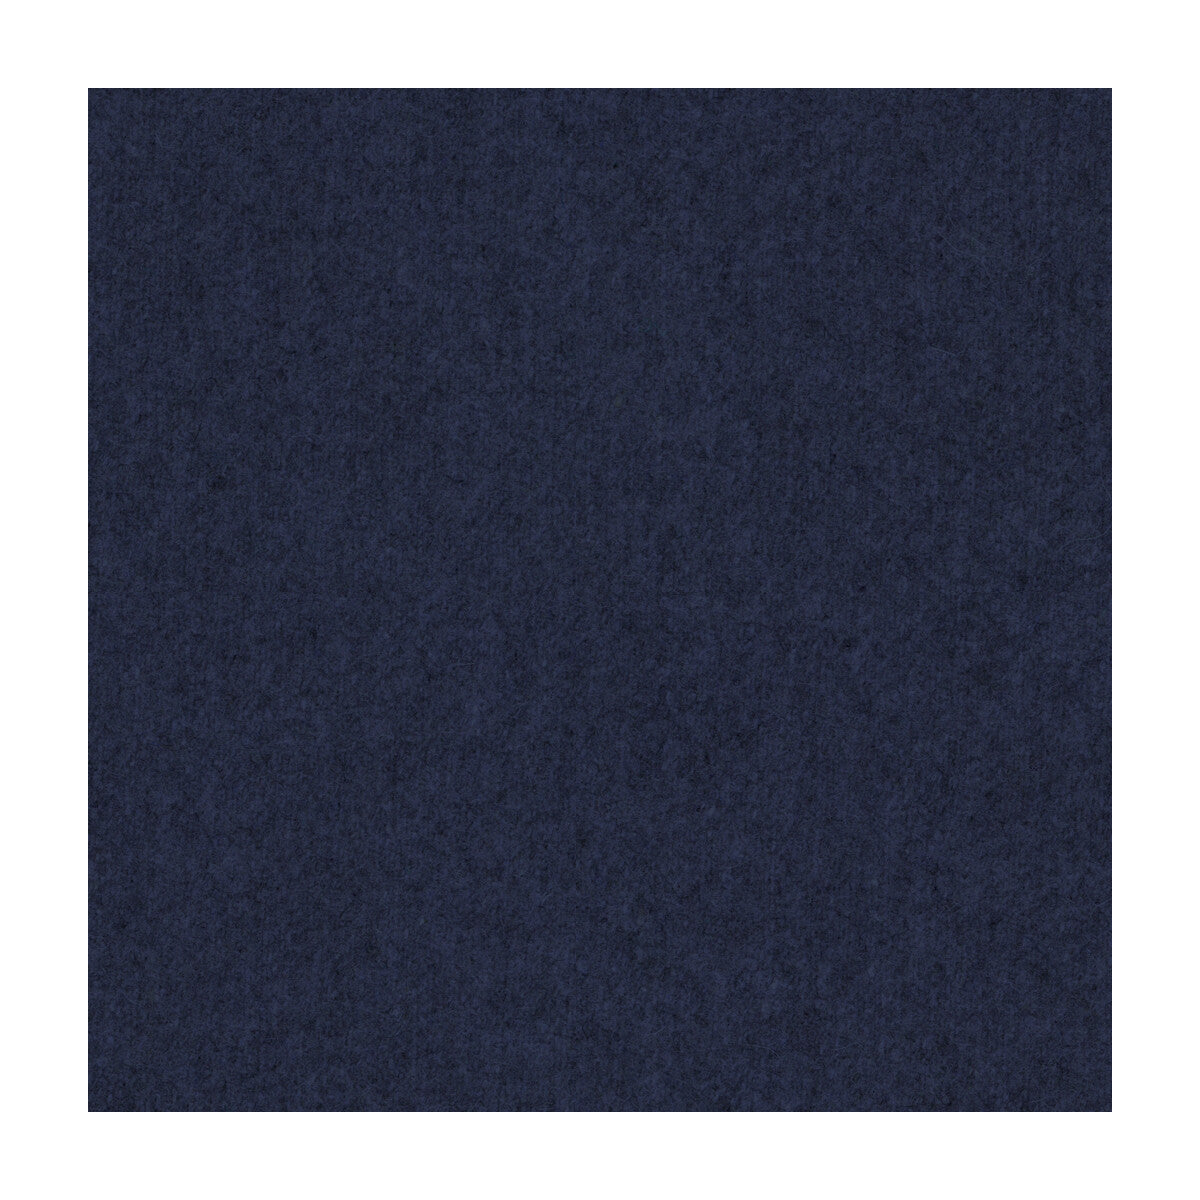 Skye Wool fabric in ink color - pattern 2017118.50.0 - by Lee Jofa